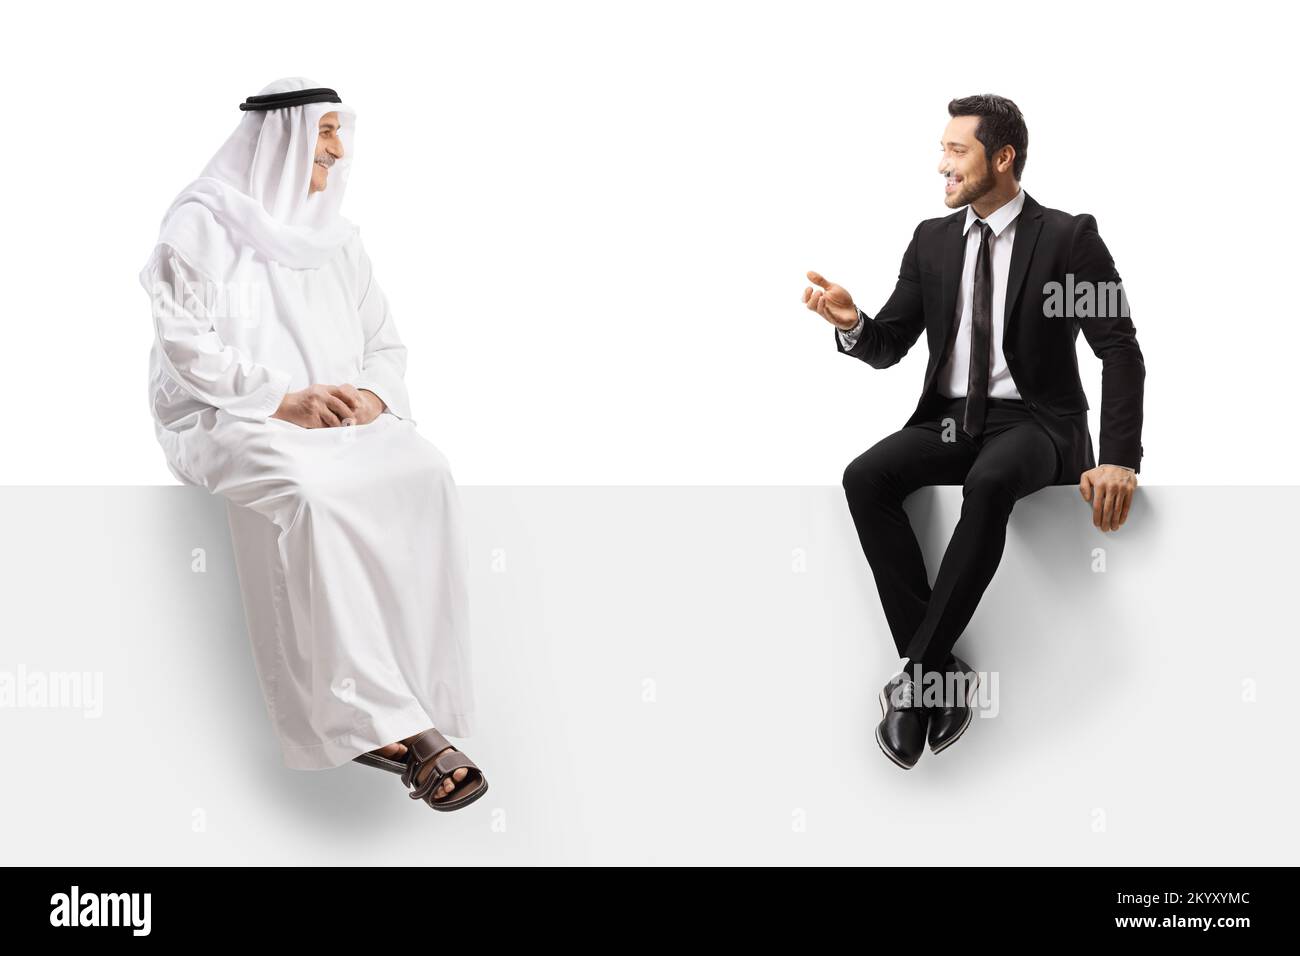 Homme d'affaires et homme arabe dans des clotes ethniques assis sur un panneau blanc ayant une conversation isolée sur fond blanc Banque D'Images